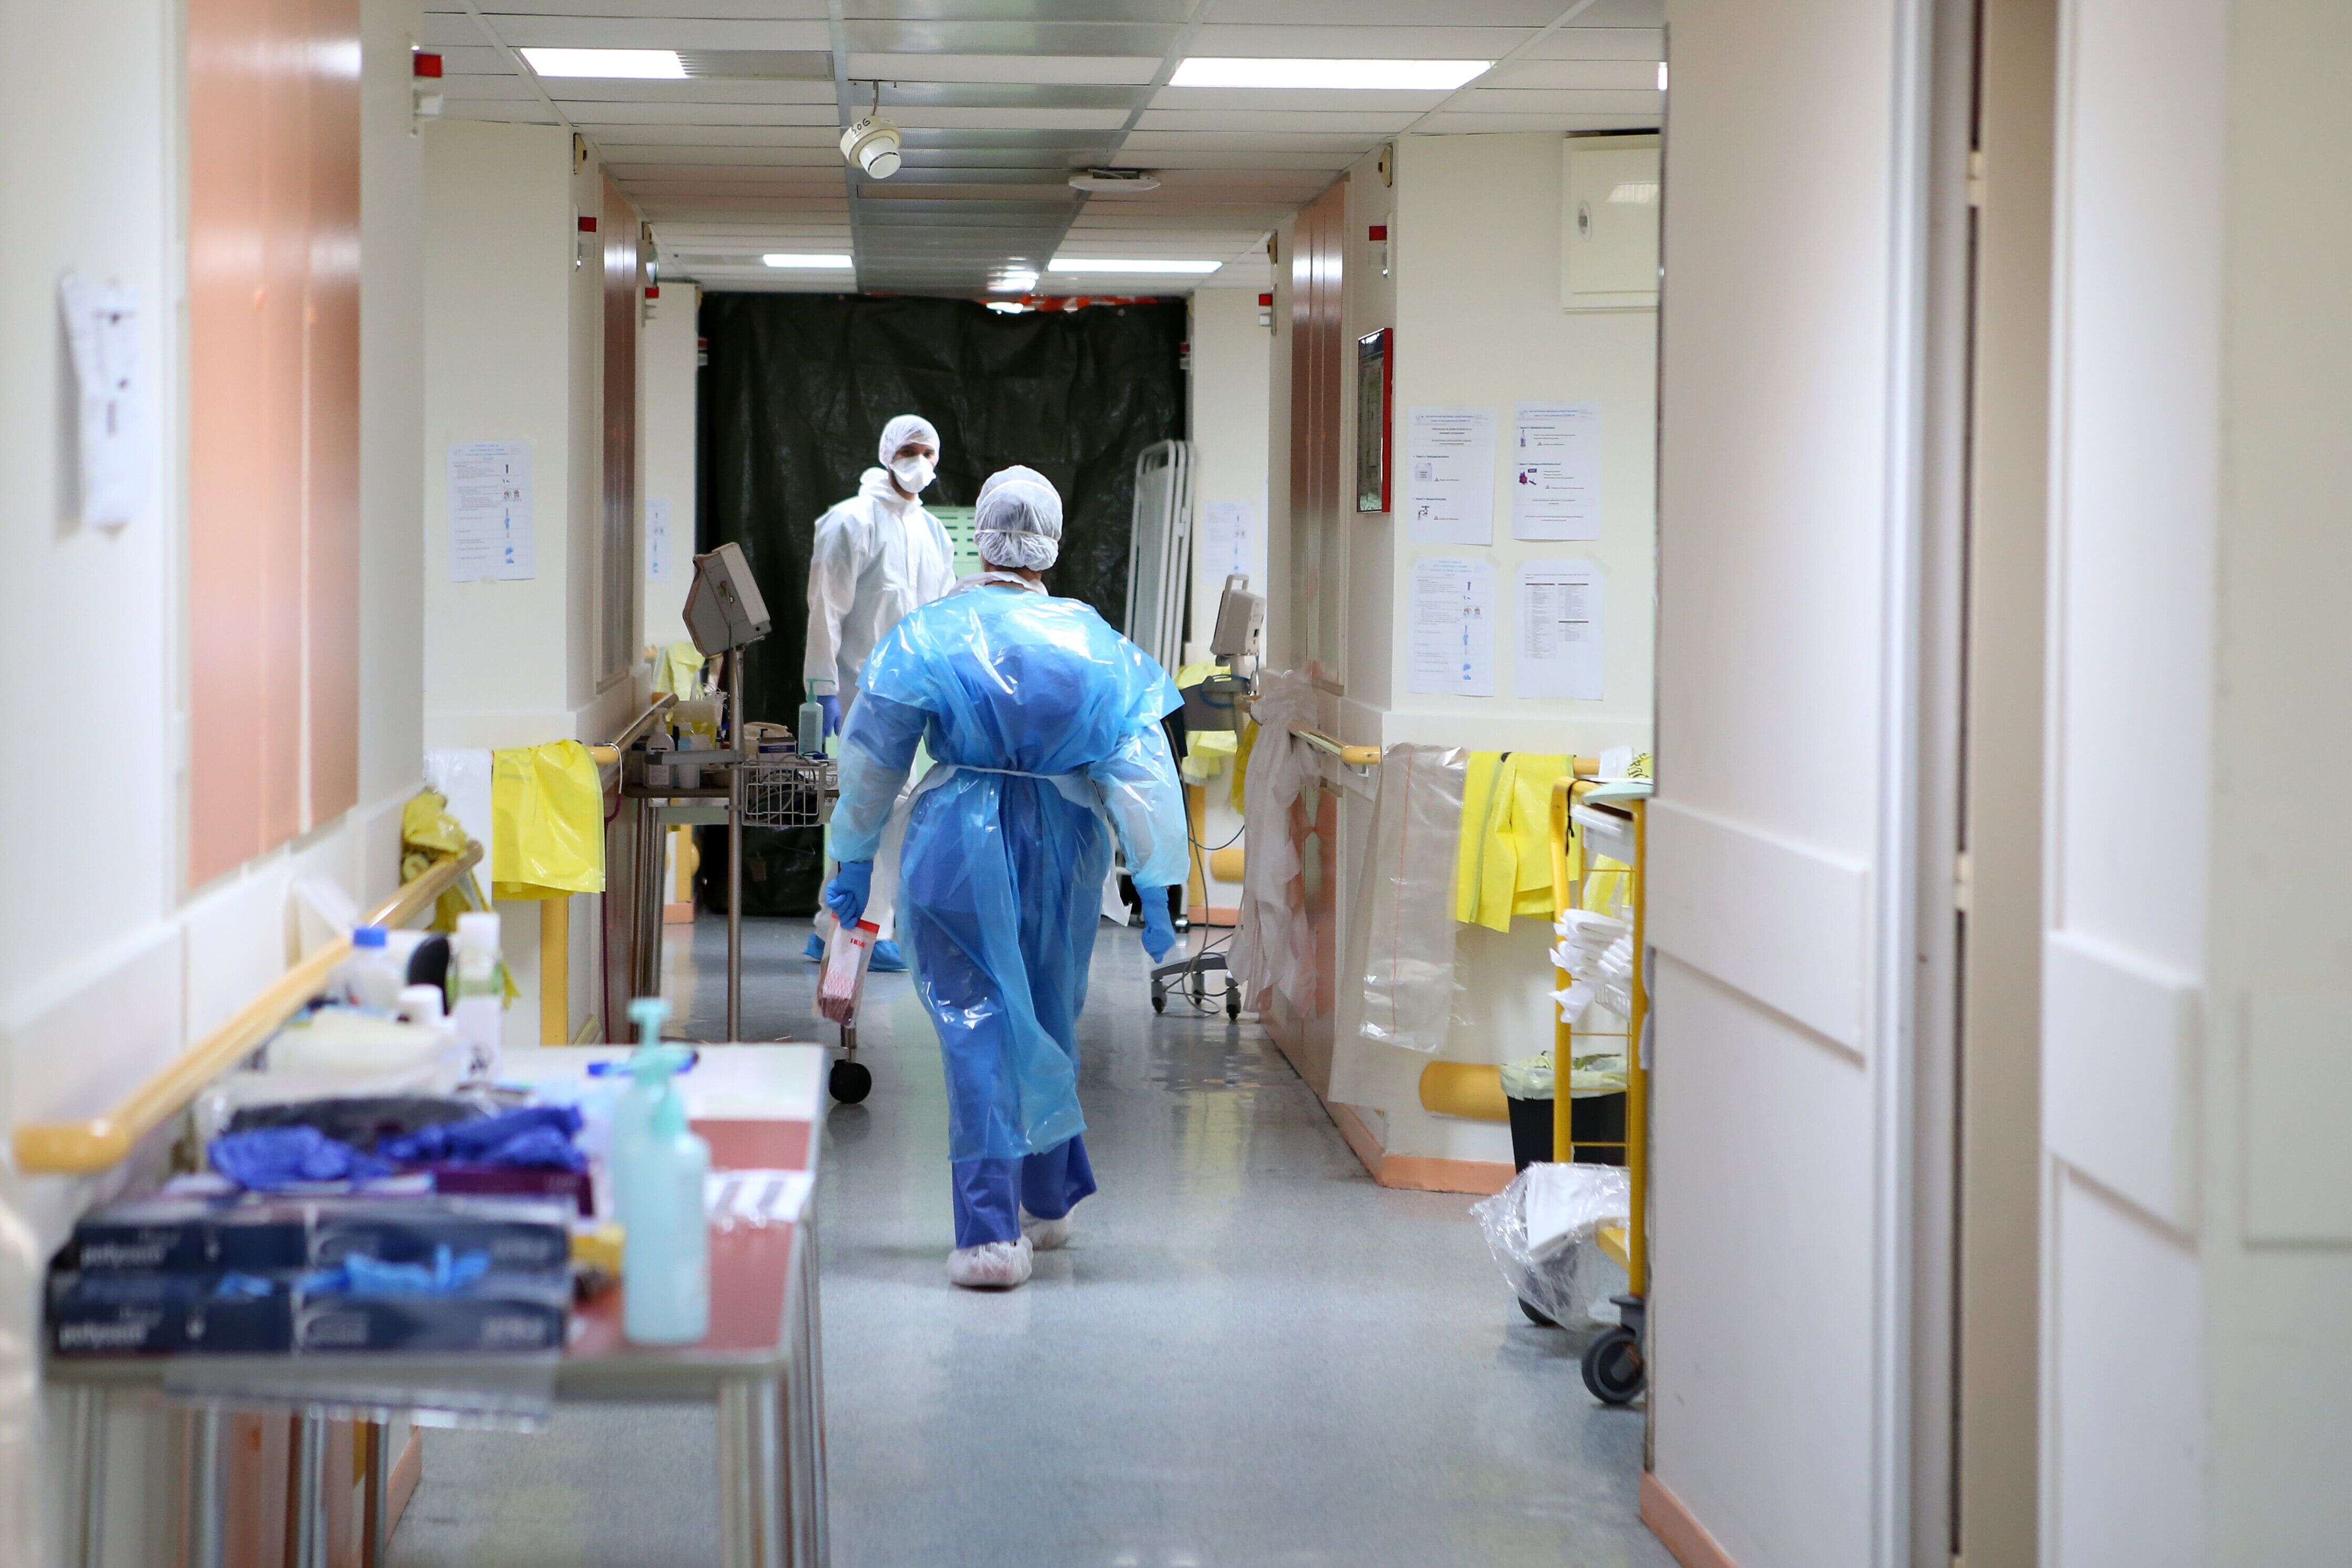 Des infirmières dans la zone Covid-19 de l'hôpital Eugénie d'Ajaccio, le 23 avril 2020.